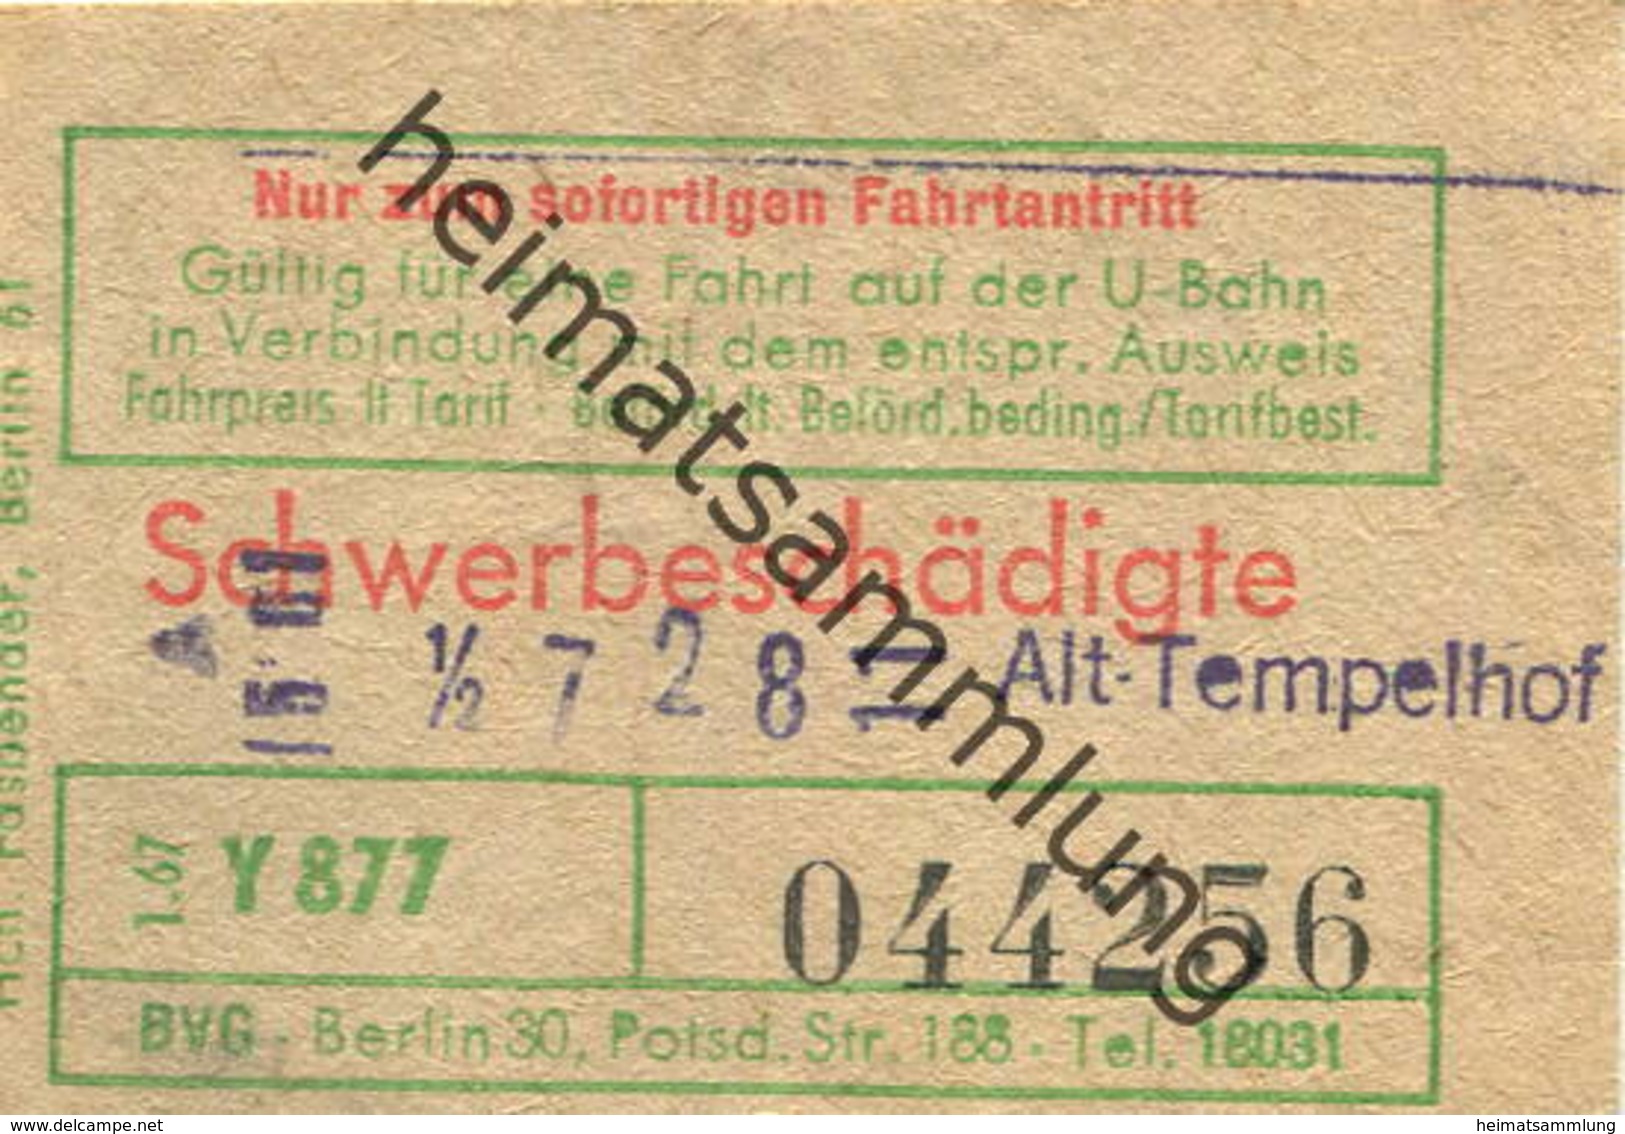 Deutschland - Berlin - Gültig Für Eine Fahrt Auf Der U-Bahn - Schwerbeschädigte - Fahrschein 1967 - Alt-Tempelhof - Europa